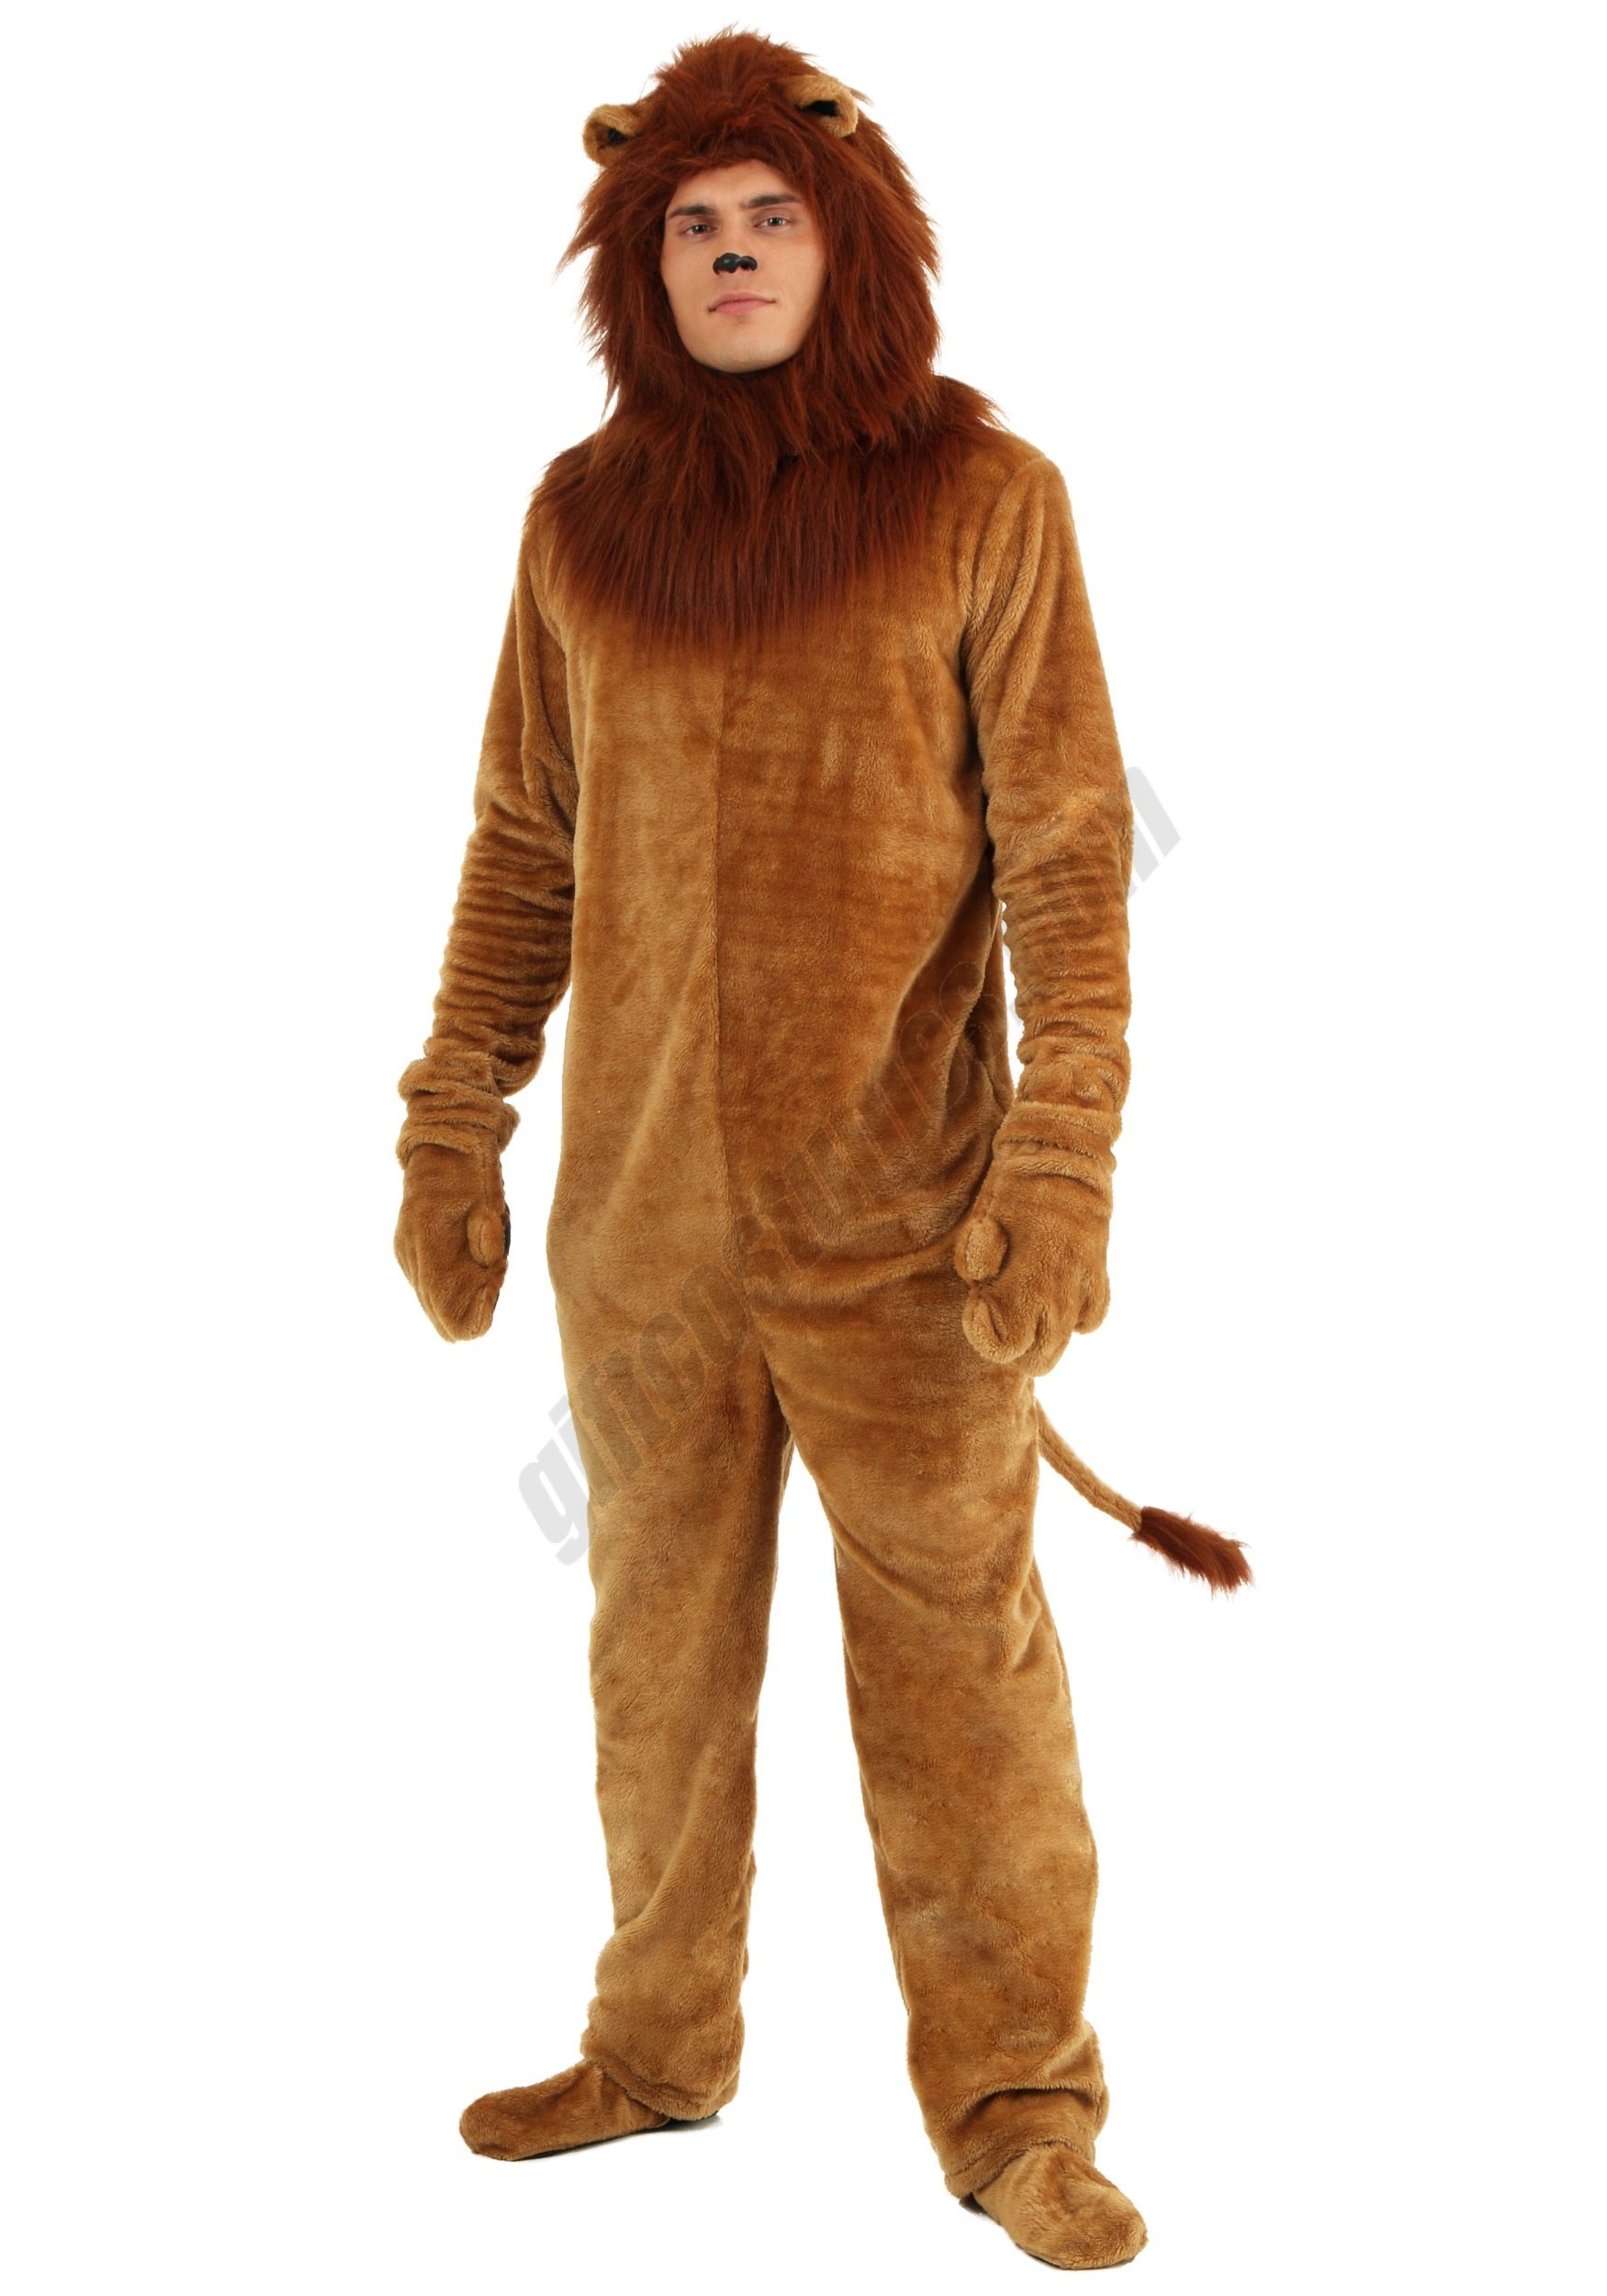 Adult Deluxe Lion Costume - Men's - Adult Deluxe Lion Costume - Men's